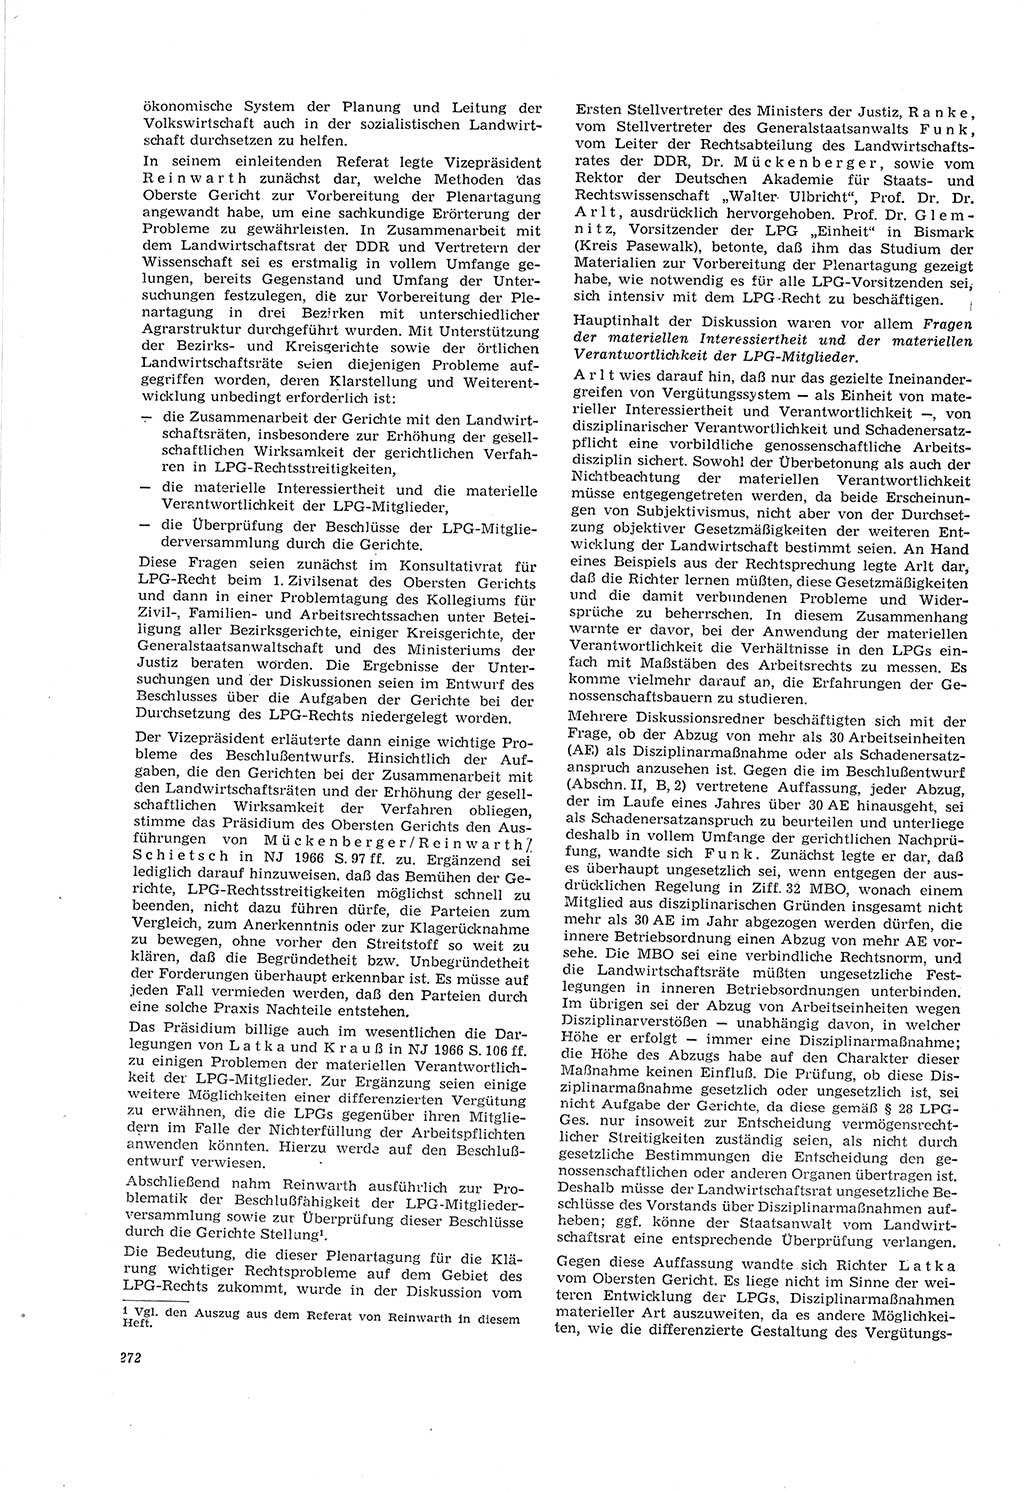 Neue Justiz (NJ), Zeitschrift für Recht und Rechtswissenschaft [Deutsche Demokratische Republik (DDR)], 20. Jahrgang 1966, Seite 272 (NJ DDR 1966, S. 272)